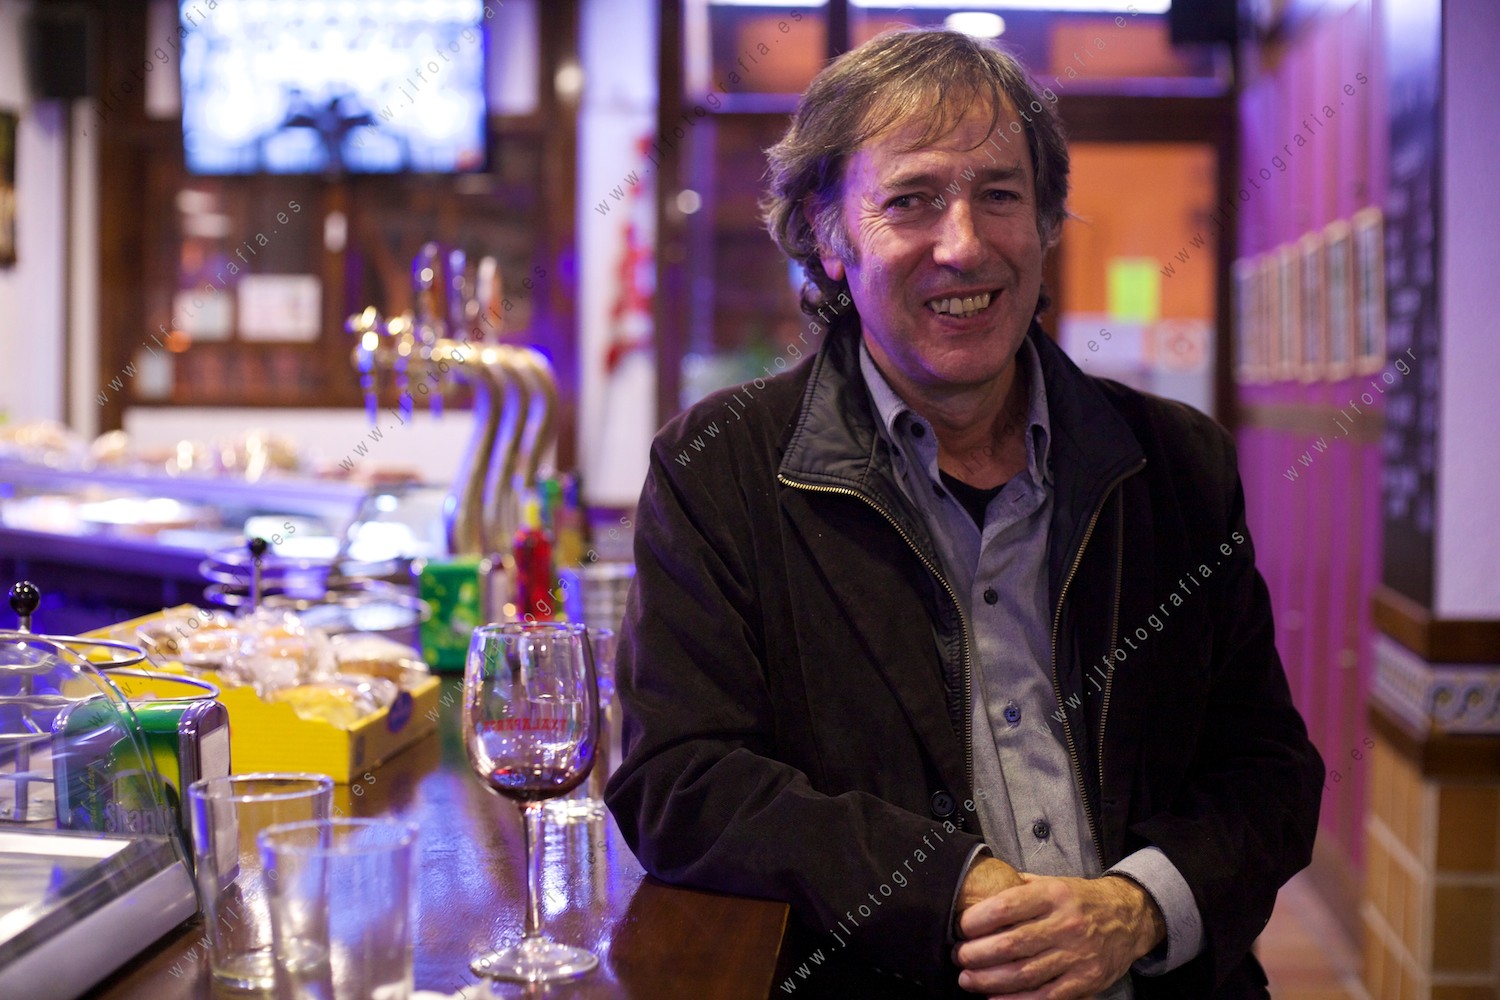 Juan Torre retratado en un bar tras la charla debate de Denbora